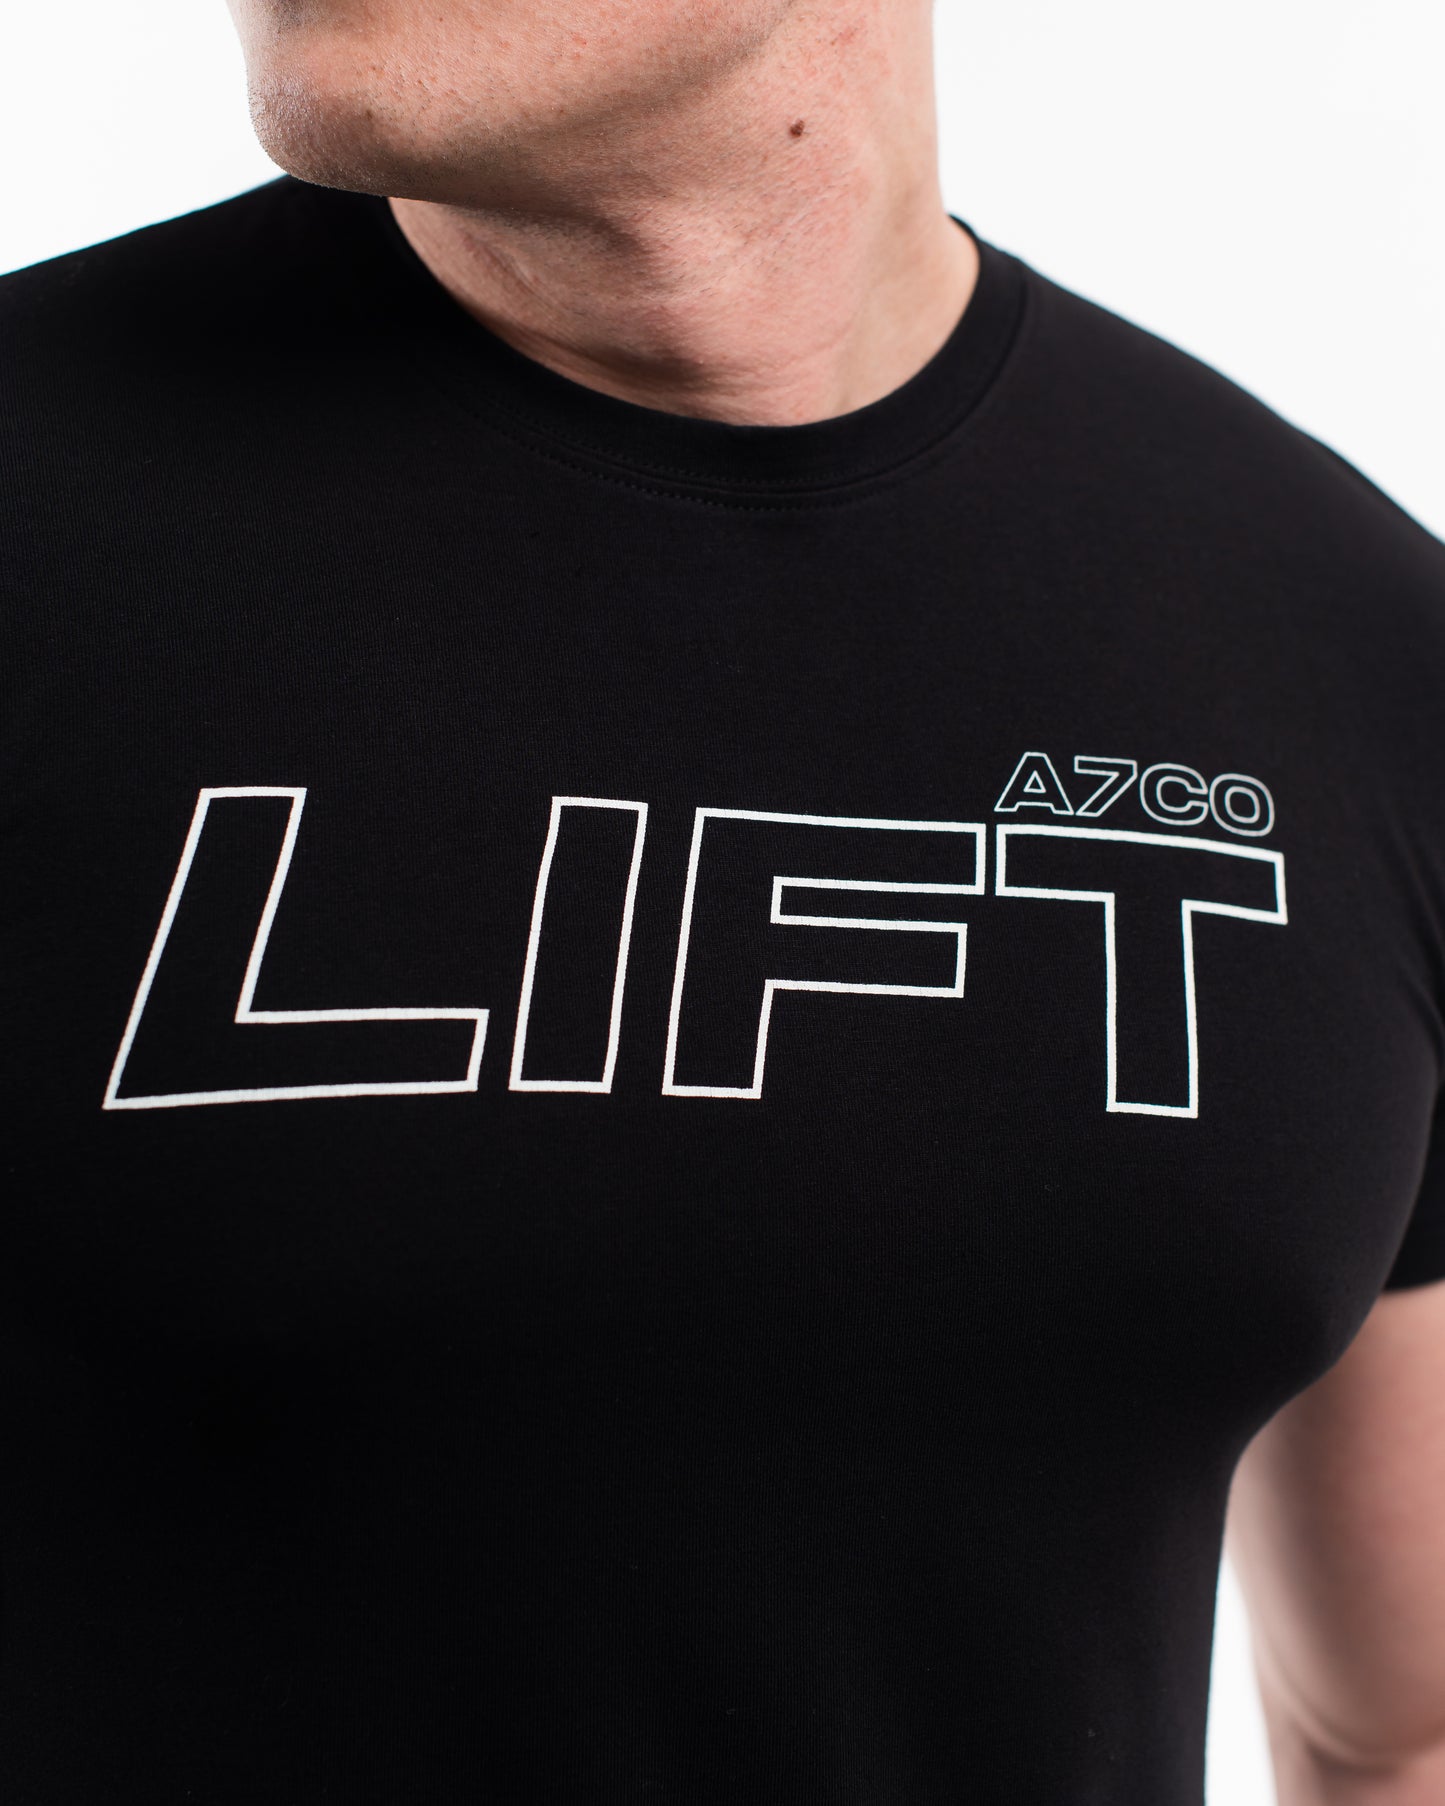 
                  
                    A7CO Lift Men's Shirt
                  
                